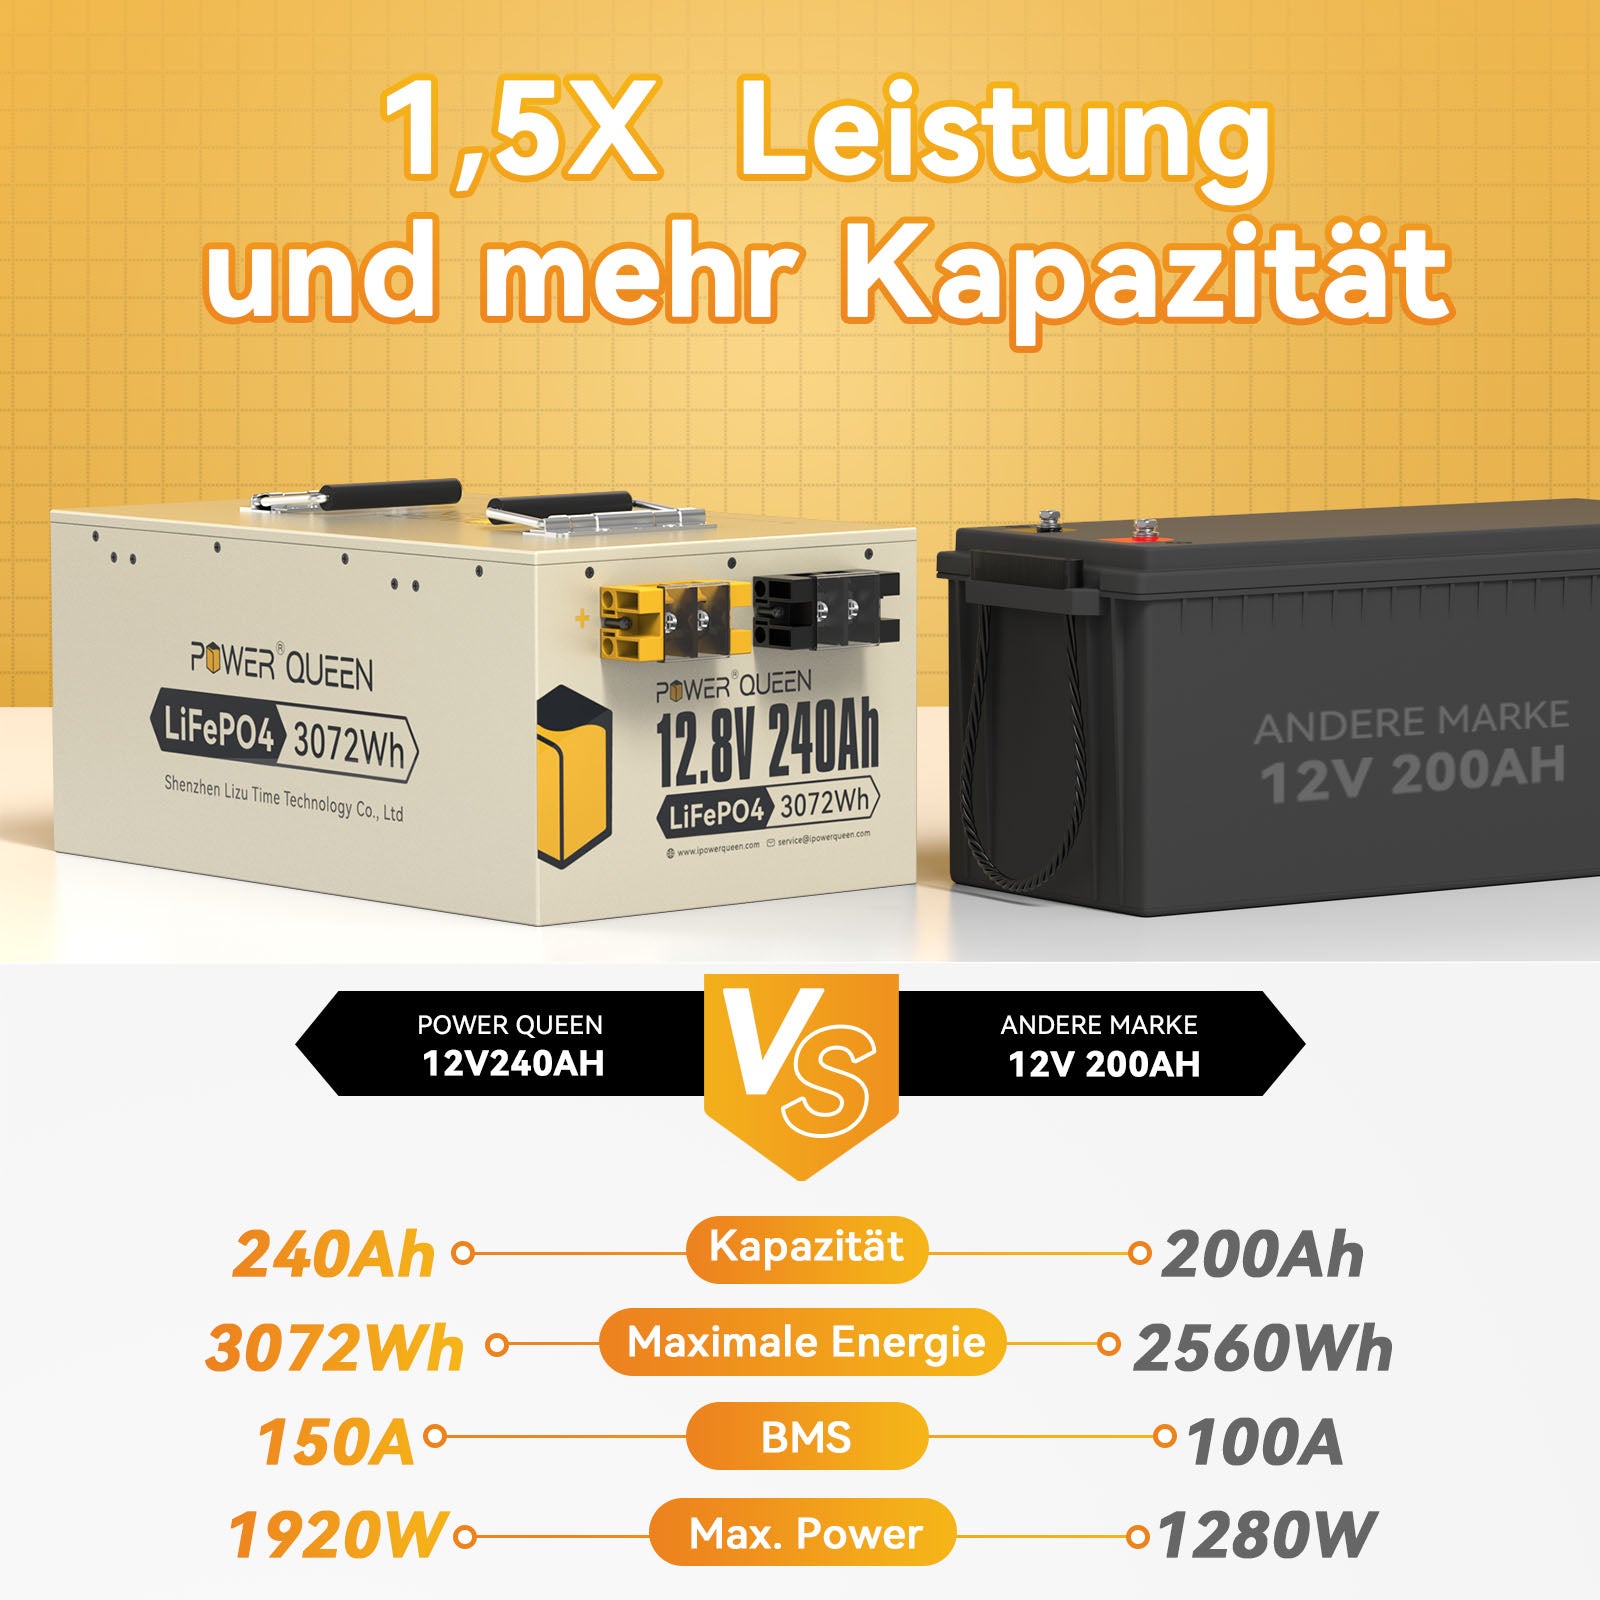 【0% IVA】Batería LiFePO4 Power Queen de 12,8 V y 240 Ah, BMS integrado de 150 A